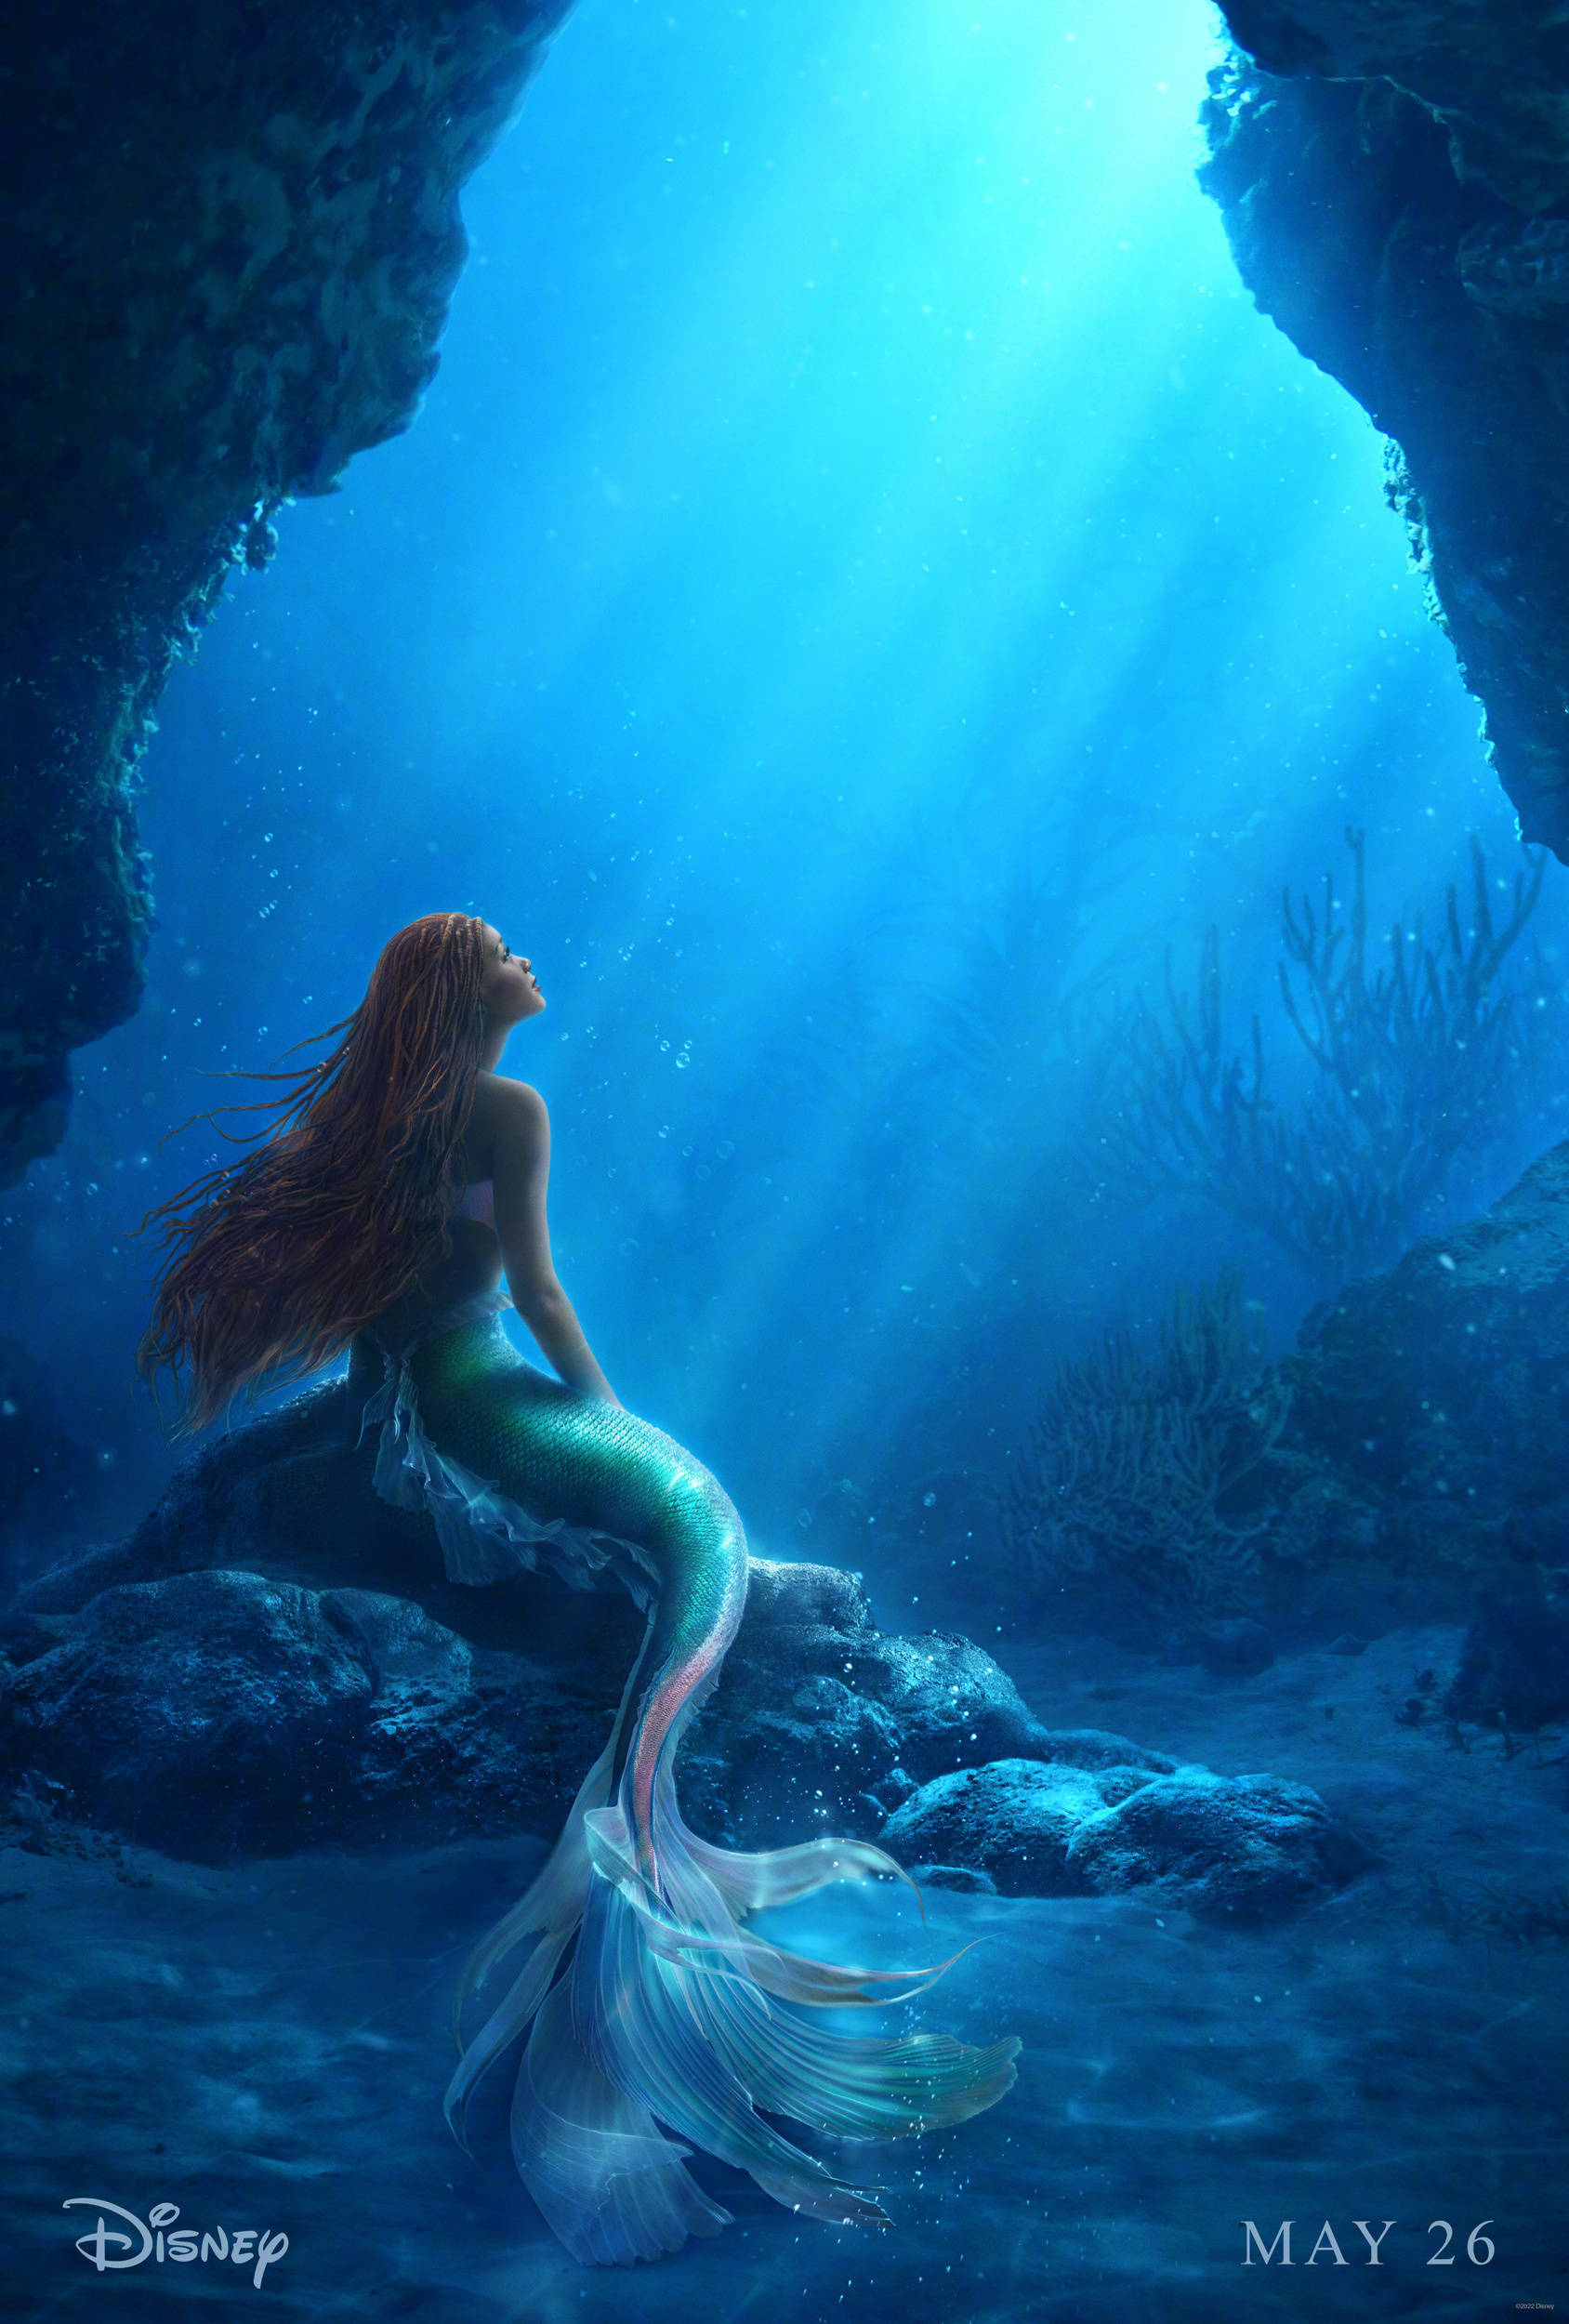 迪士尼真人版《小美人鱼》发布首款海报 爱丽儿仰望海面画风梦幻